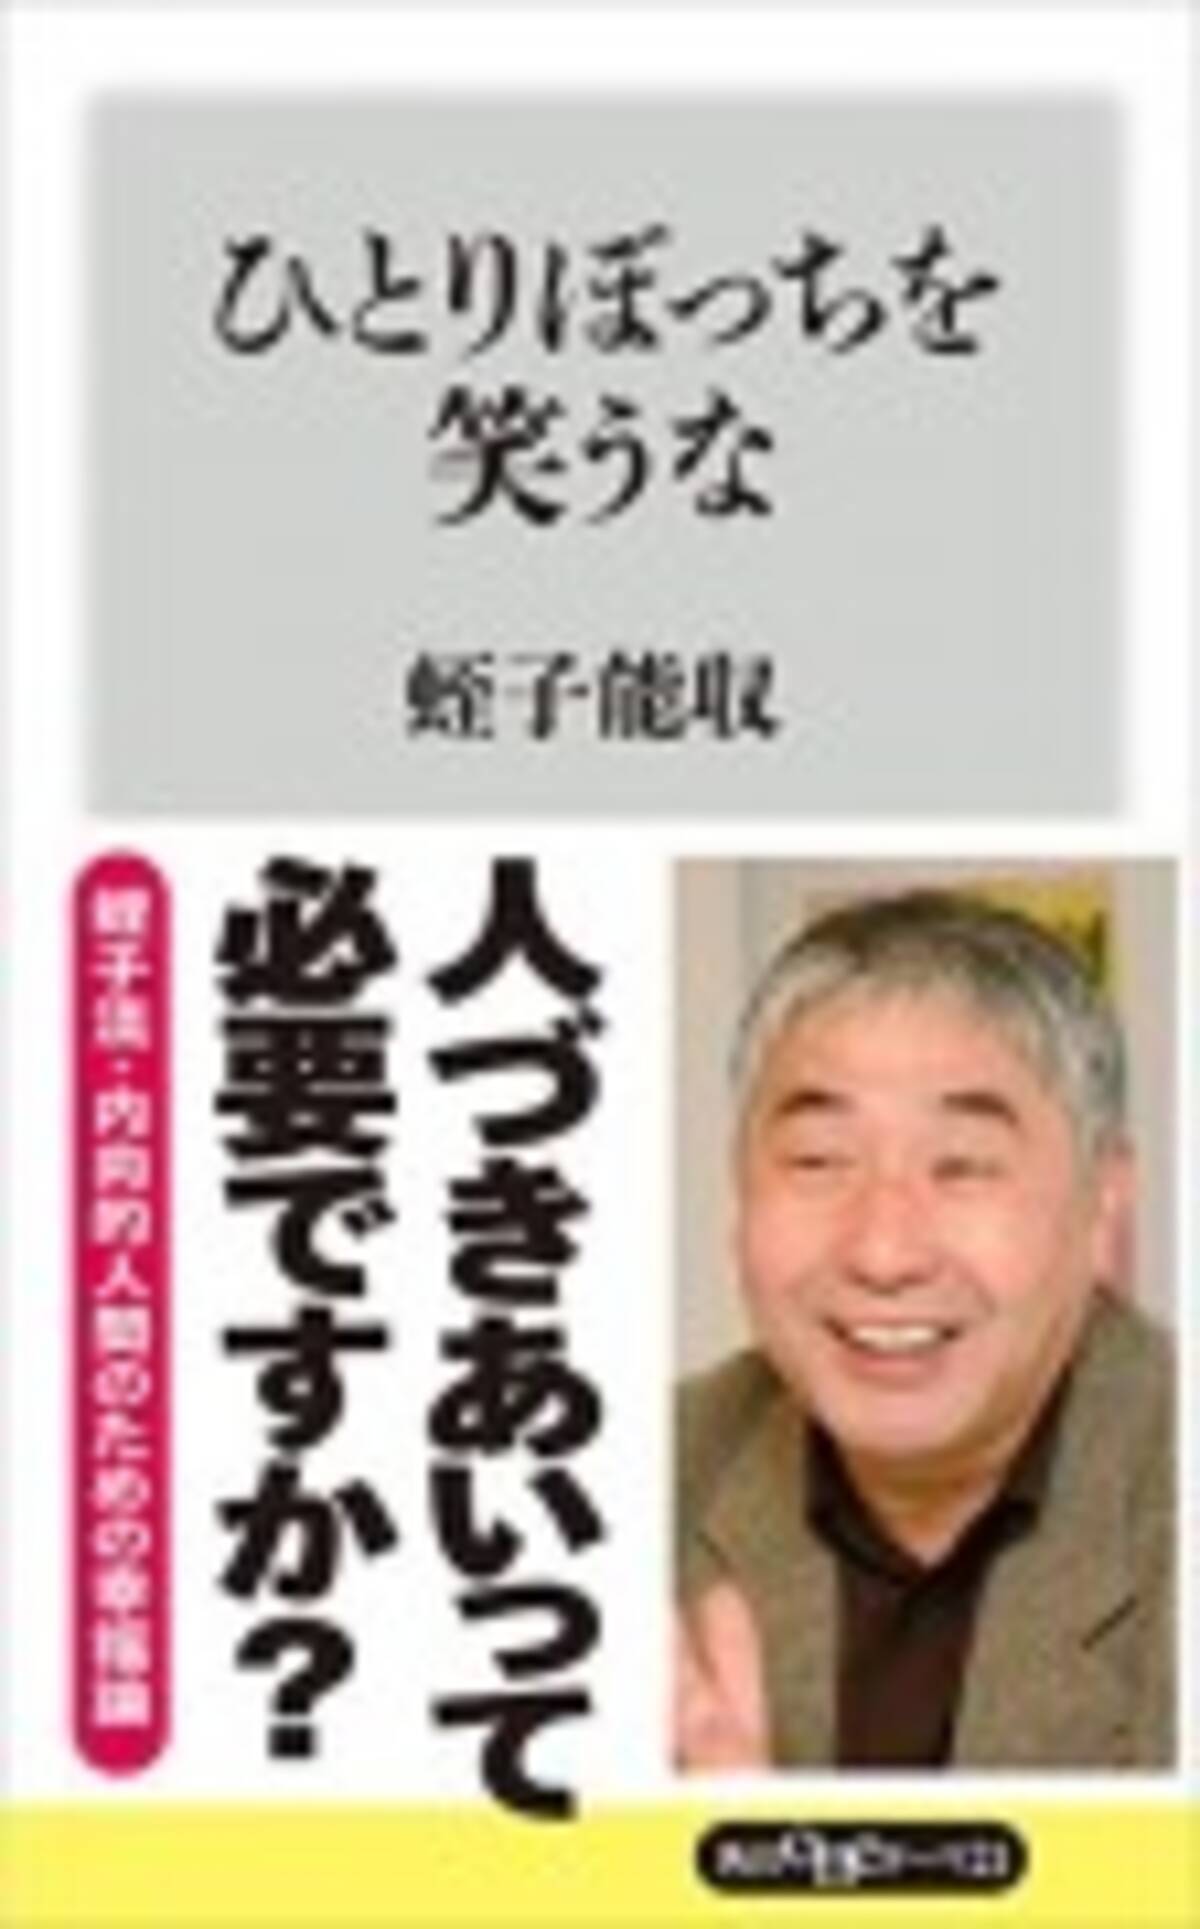 蛭子さんの創作法 見た夢を漫画にする人々 15年1月28日 エキサイトニュース